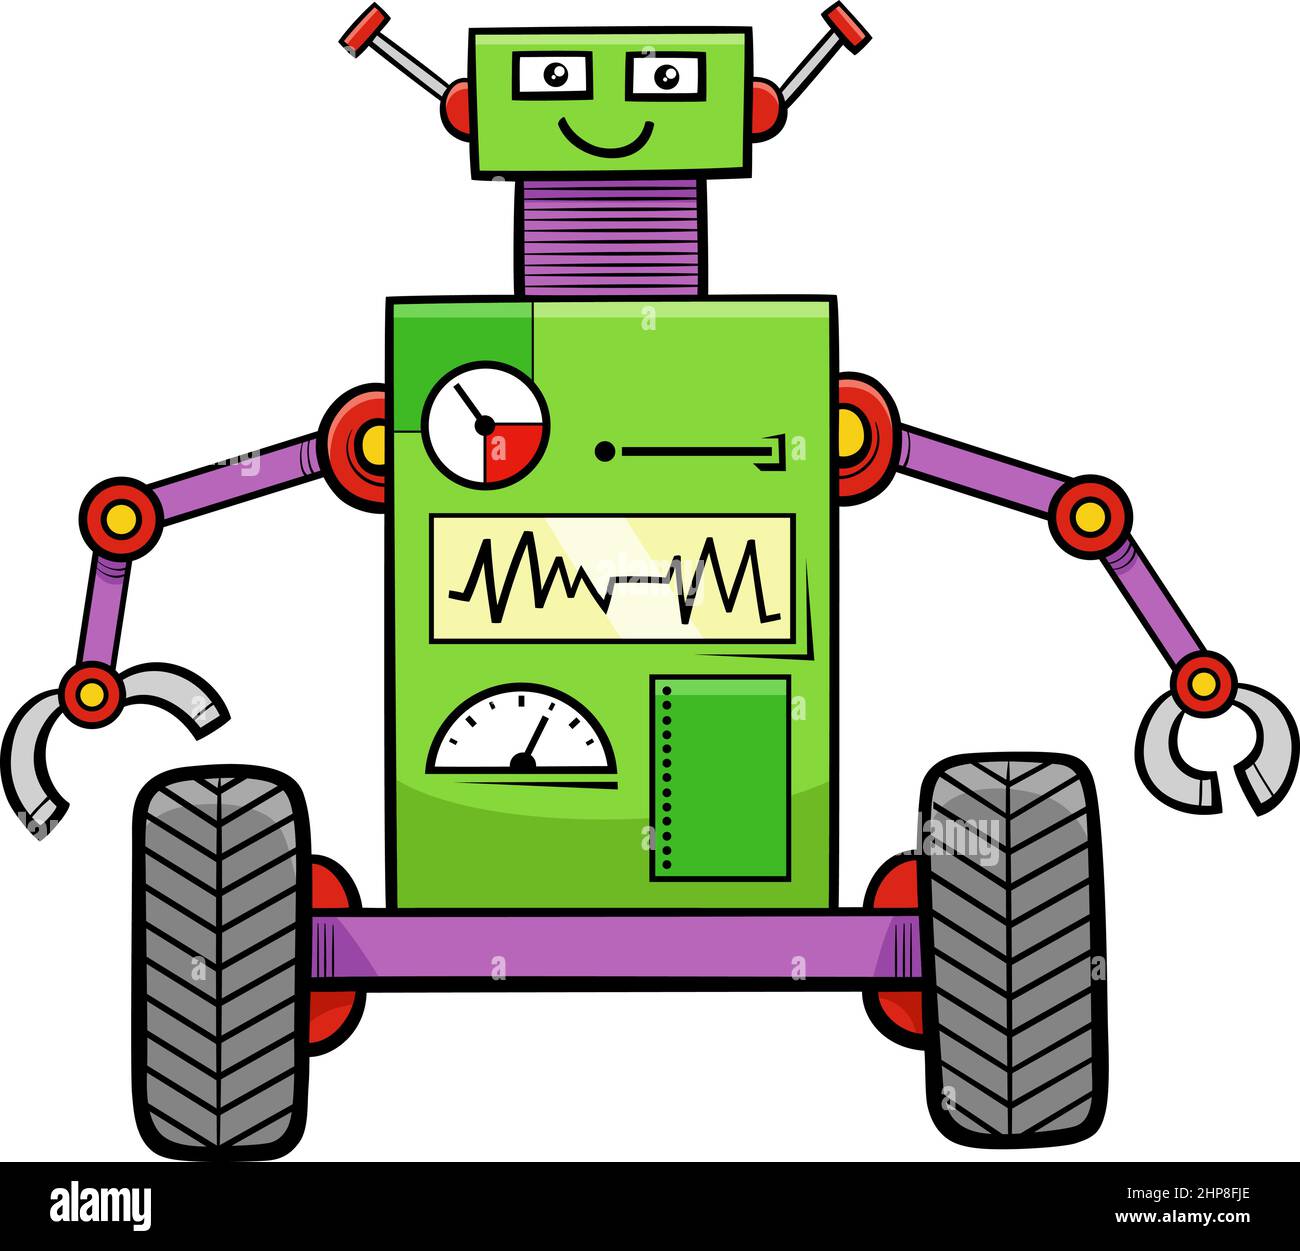 dessin animé drôle robot fantaisie personnage Illustration de Vecteur